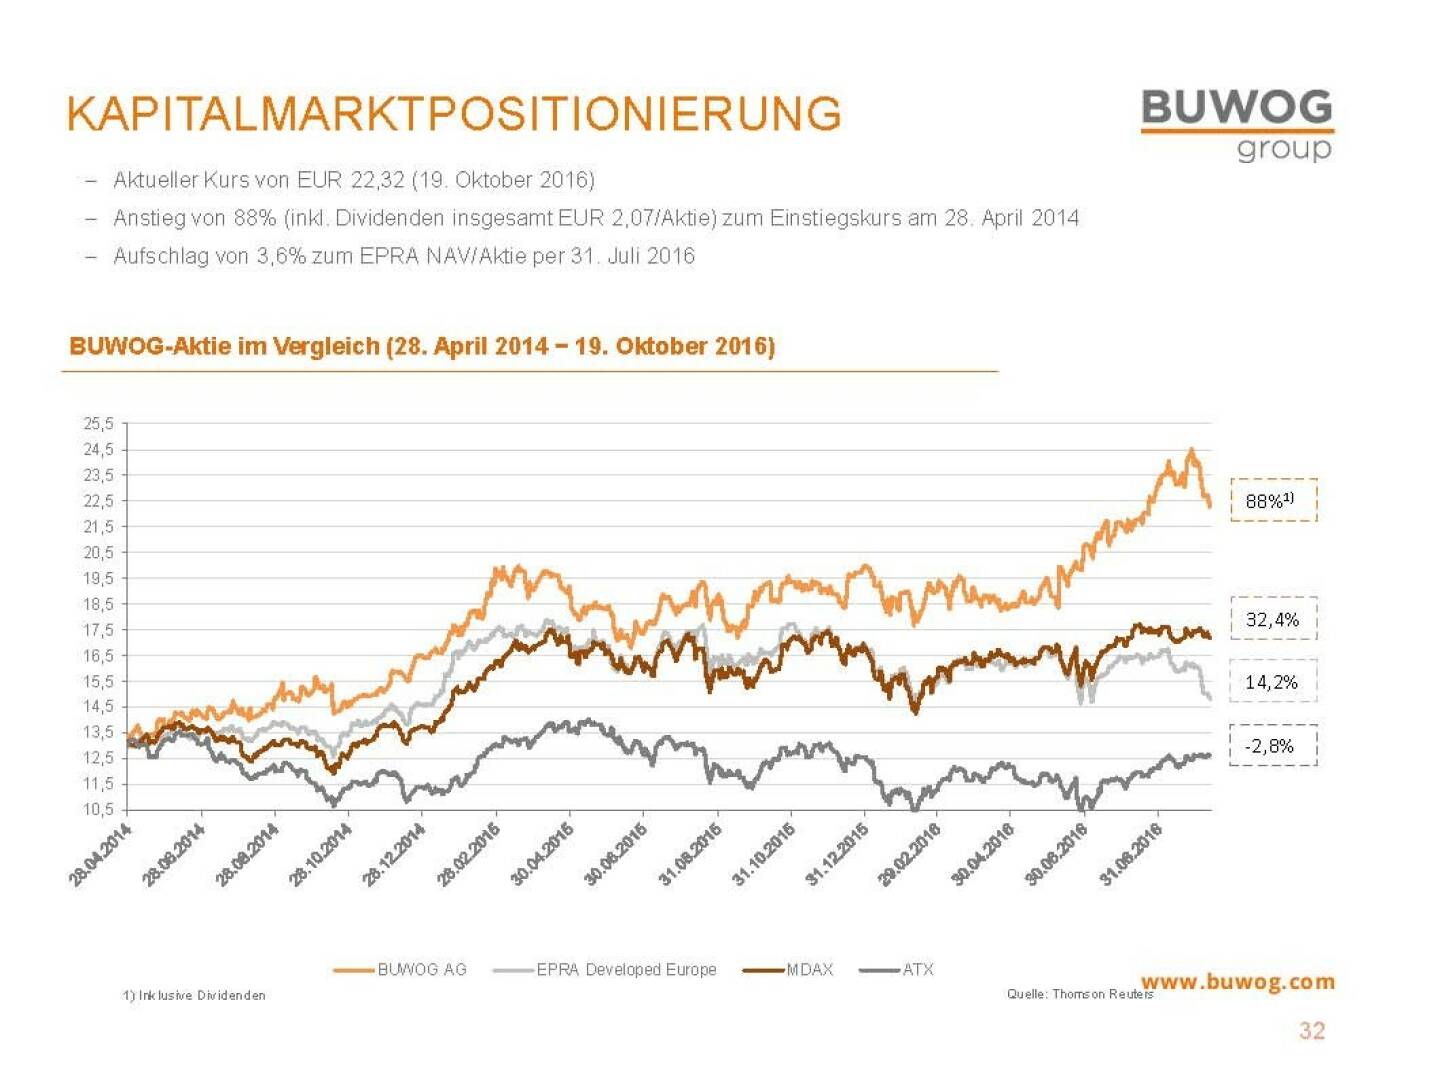 Buwog Group - Kapitalmarktpositionierung